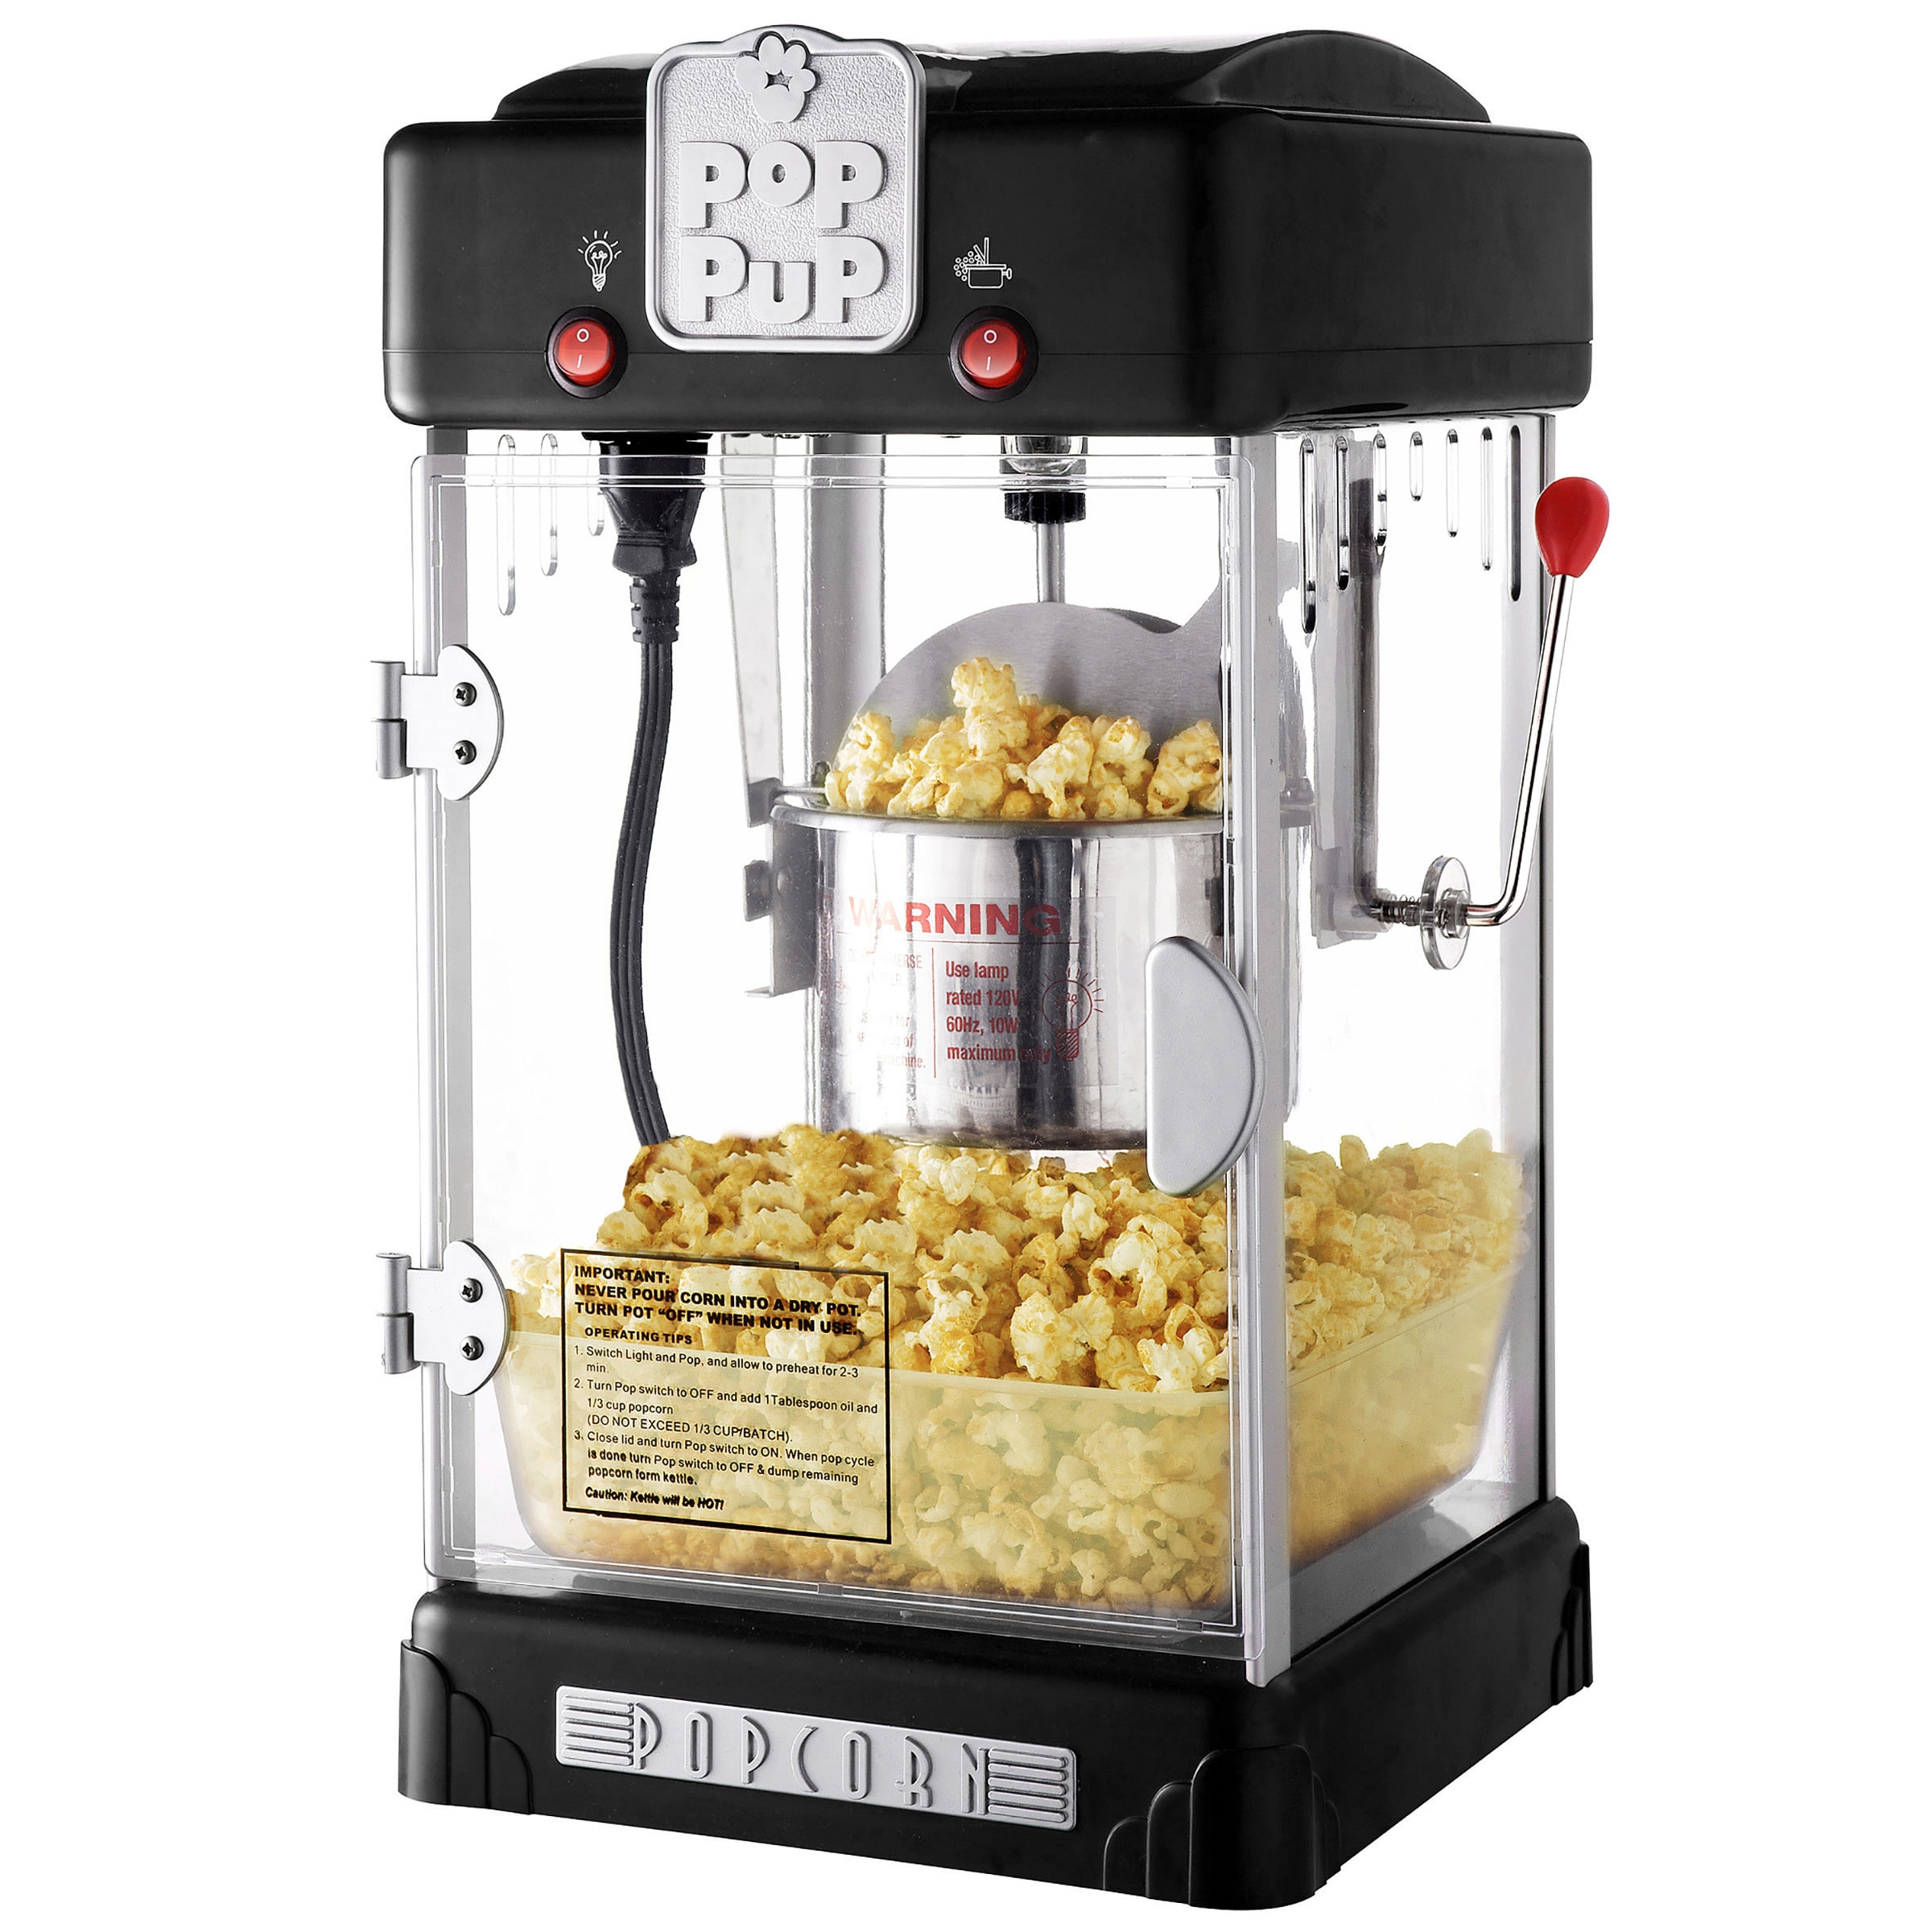 solacol Popcorn Oil for Popcorn Machine Hot Popcorn Popcorn Maker